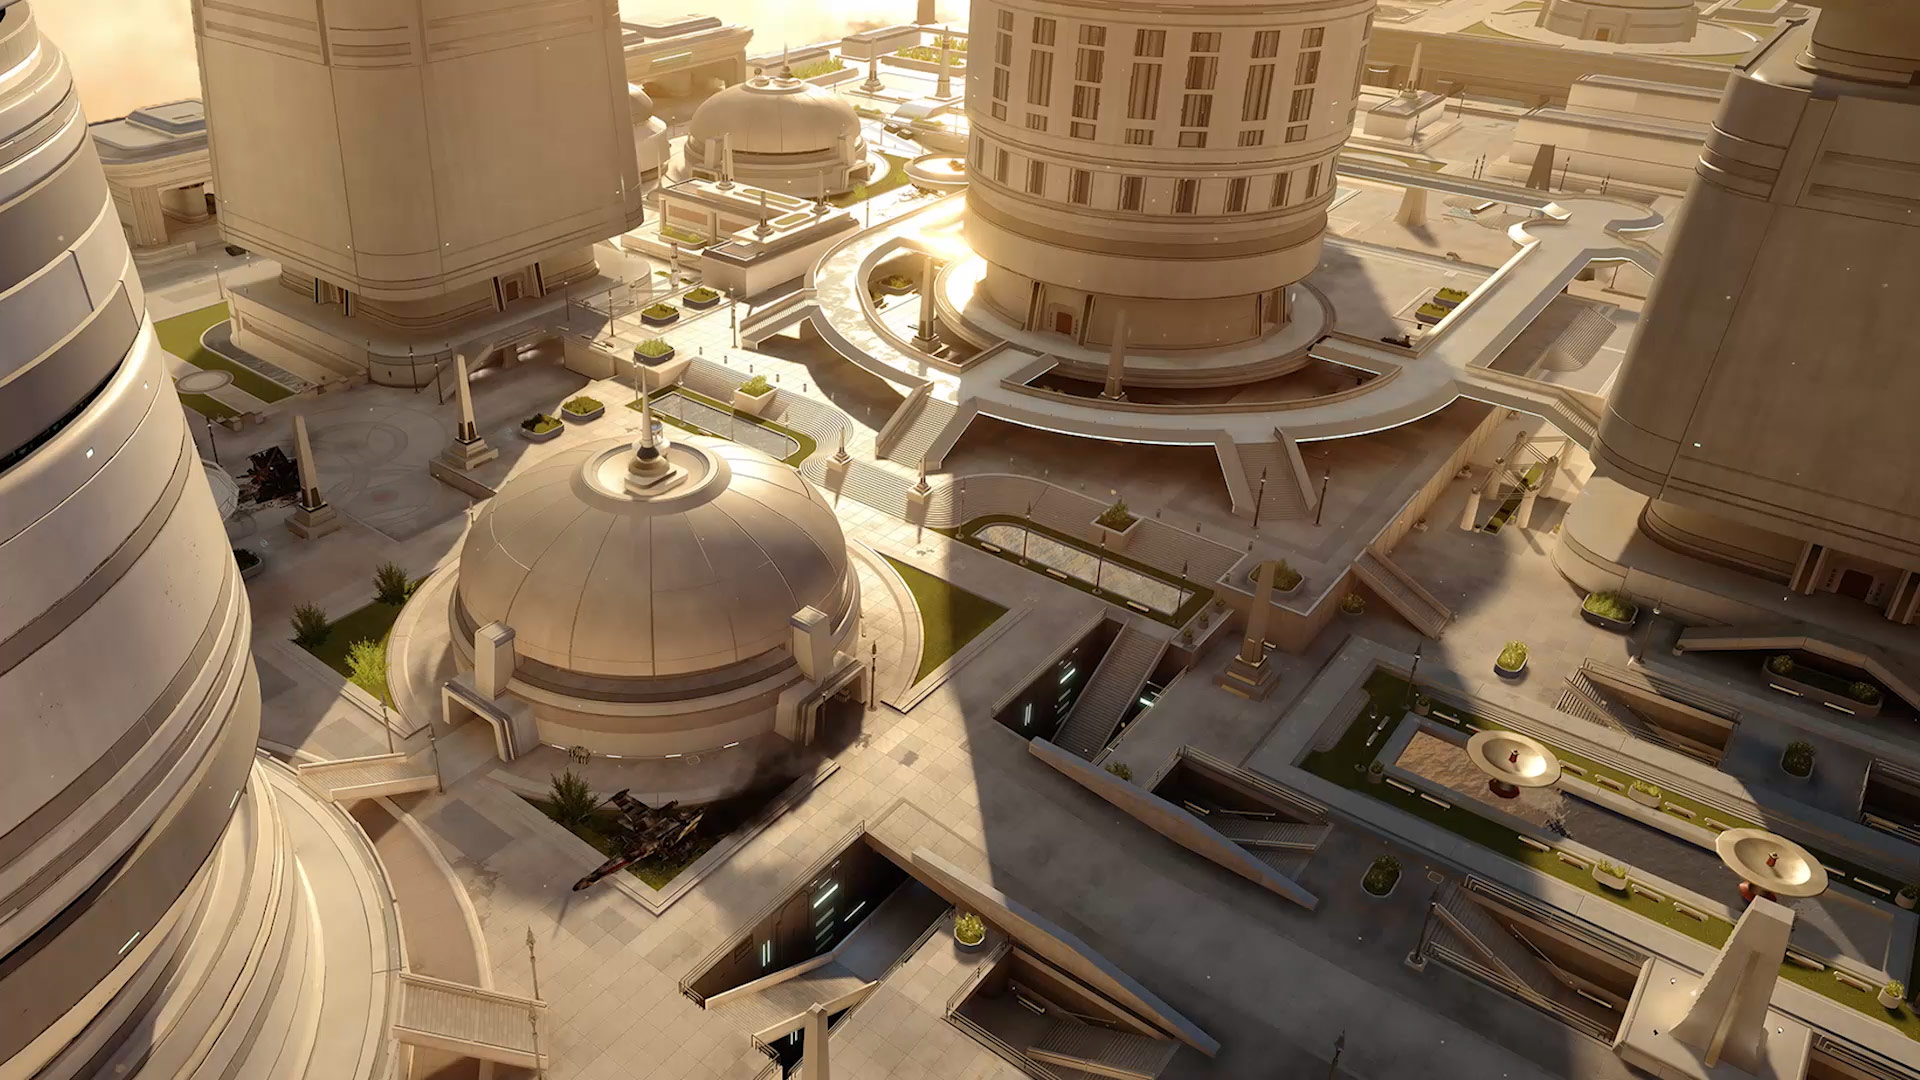 Star Wars Battlefront: Bespin - screenshot 2